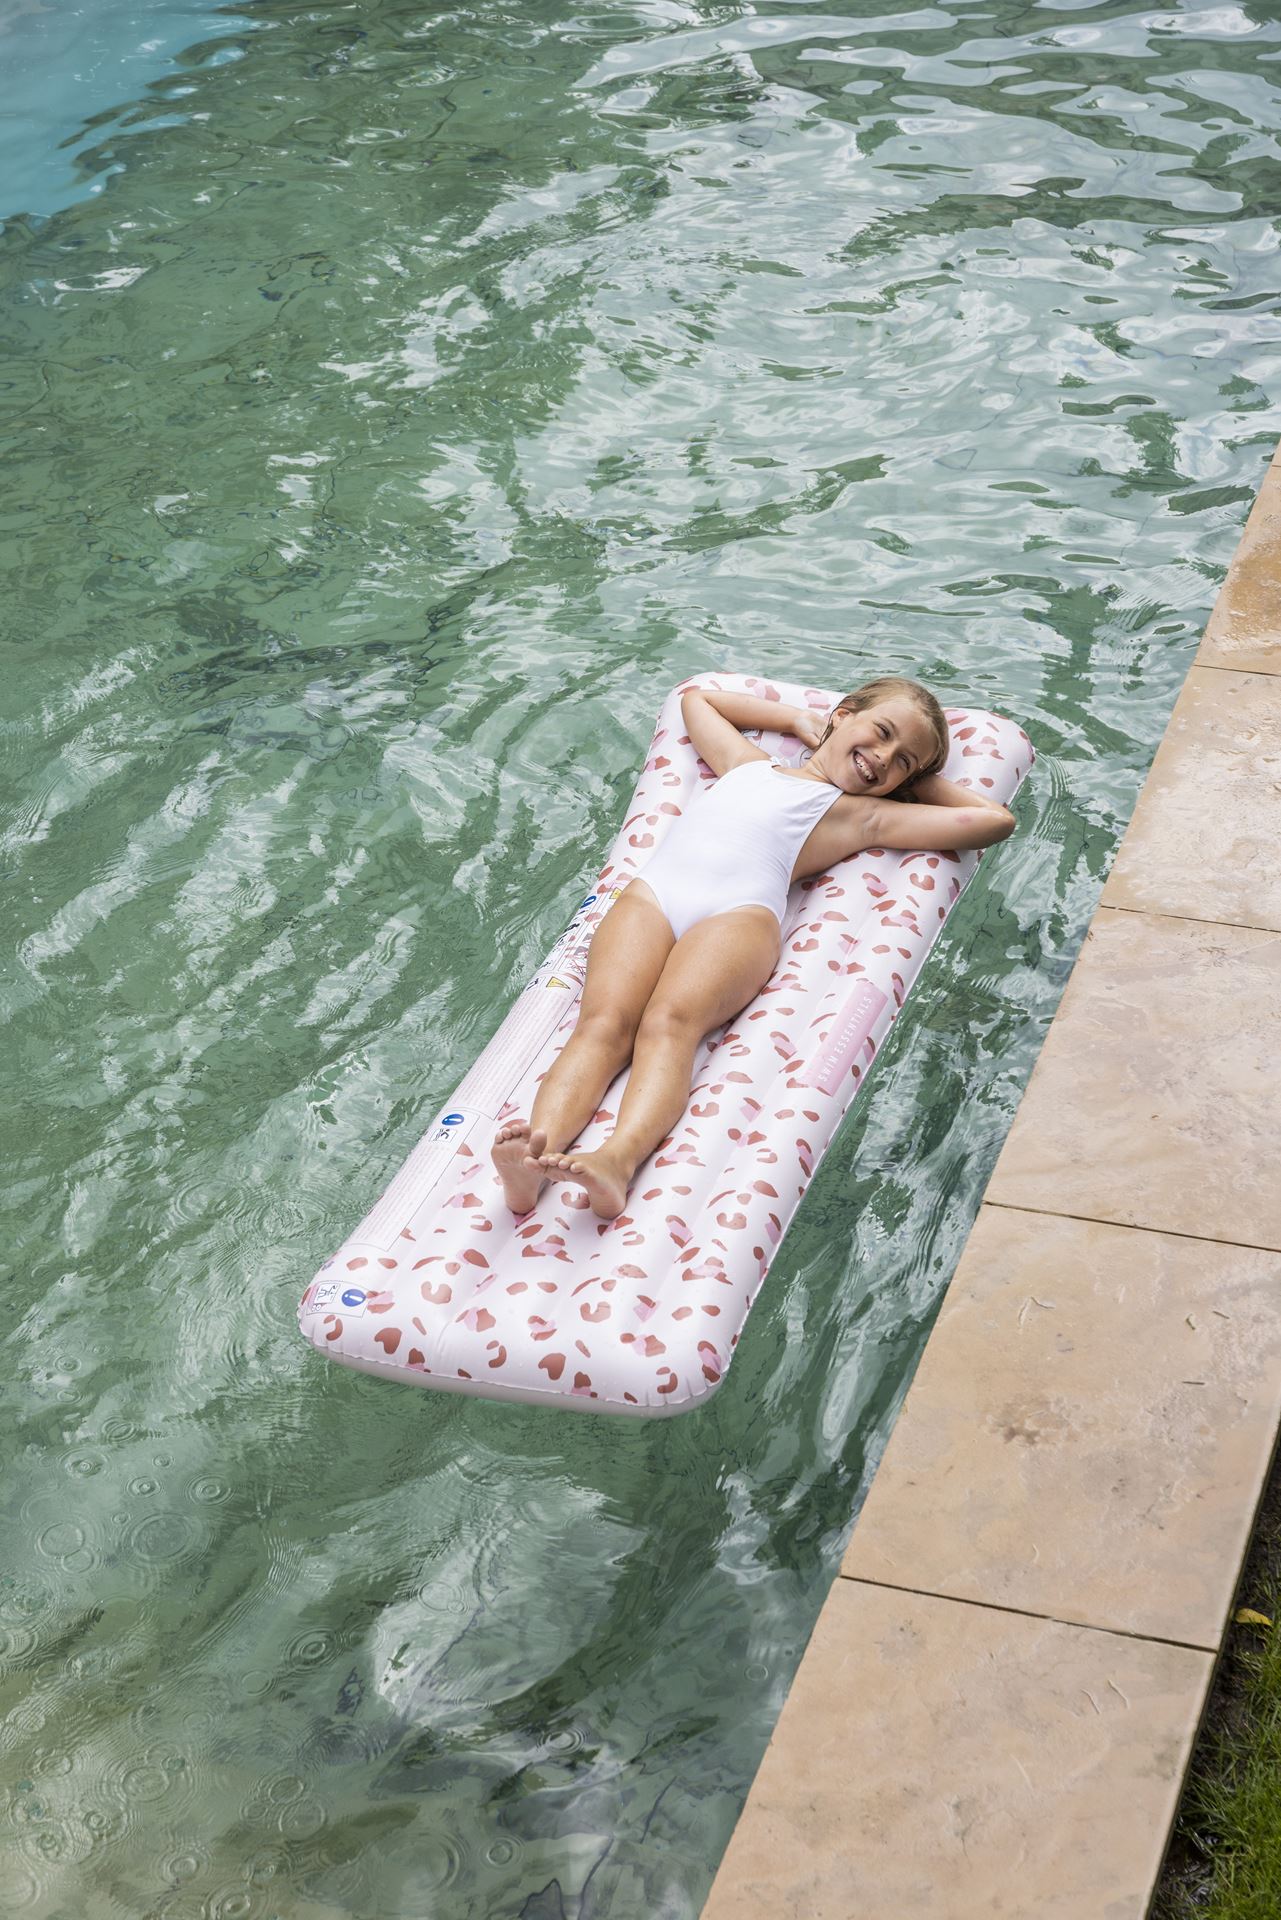 Luchtmatras-zwembad-oudroze-luipaardprint-luxe-versie